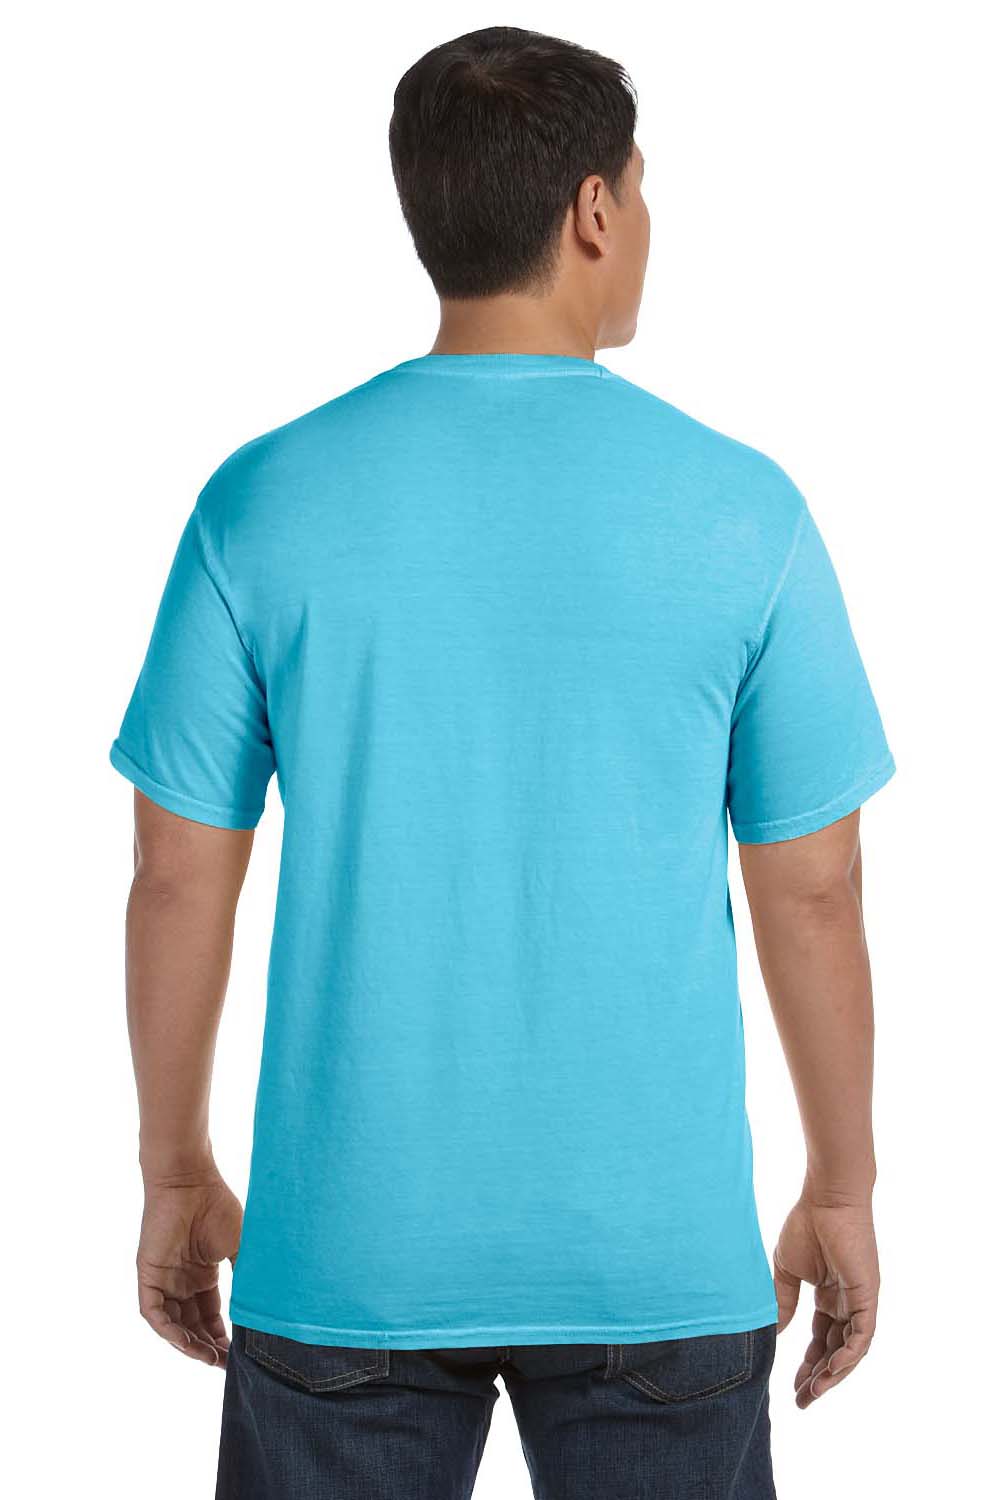 Comfort Colors C1717 Mens Short Sleeve Crewneck T-Shirt Lagoon Blue Back